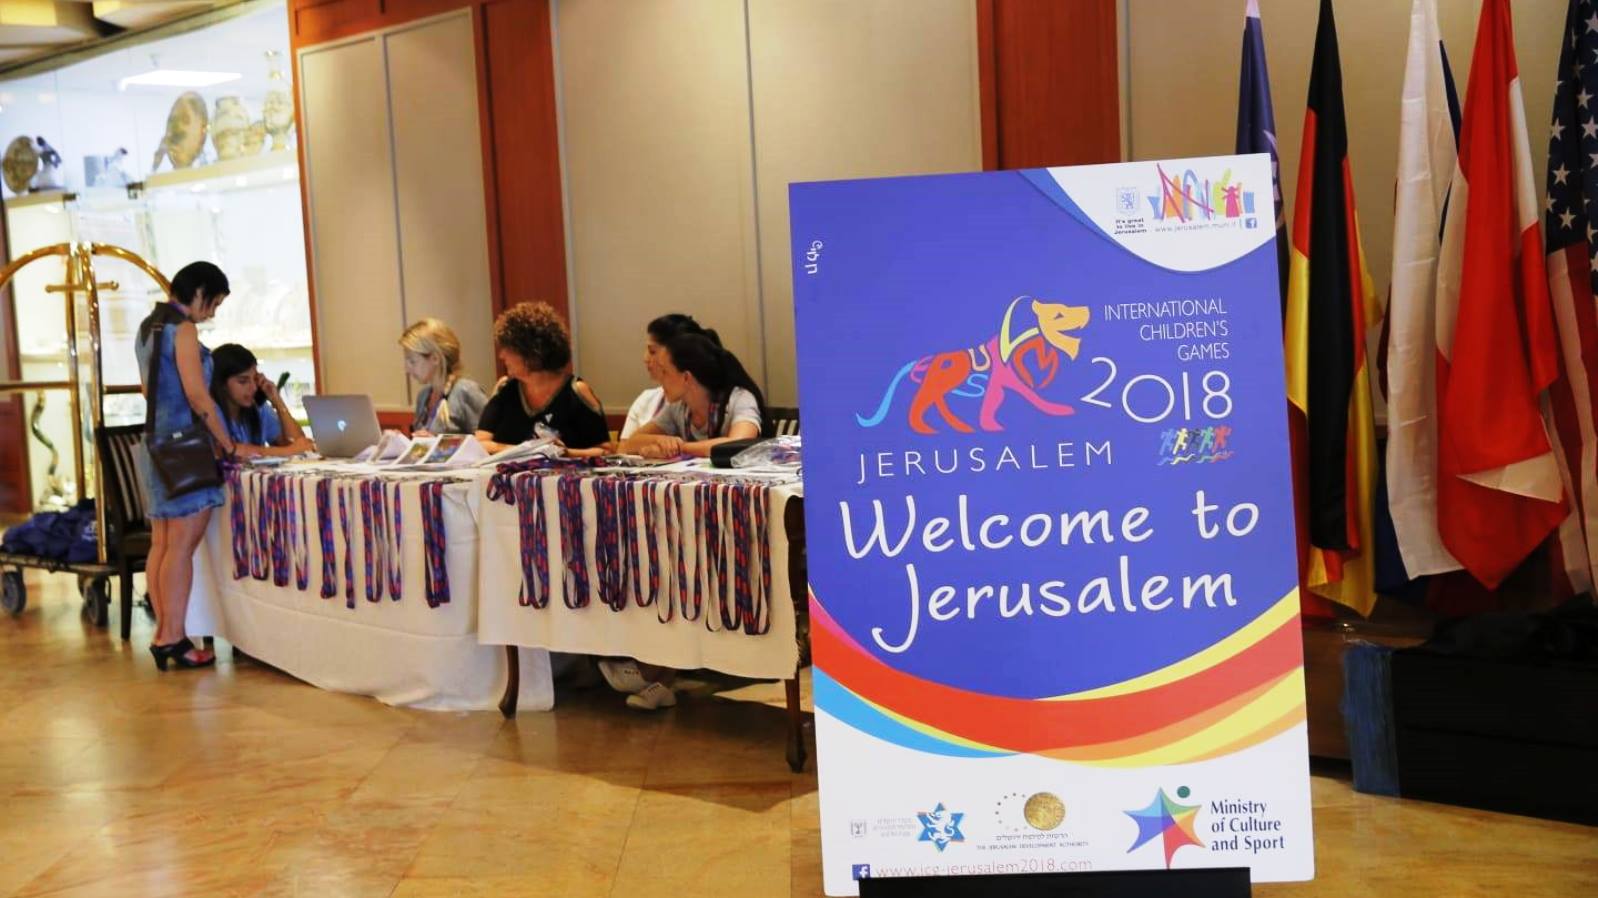 Registration for International Children’s Games in Jerusalem, July 29, 2018. Photo via Facebook